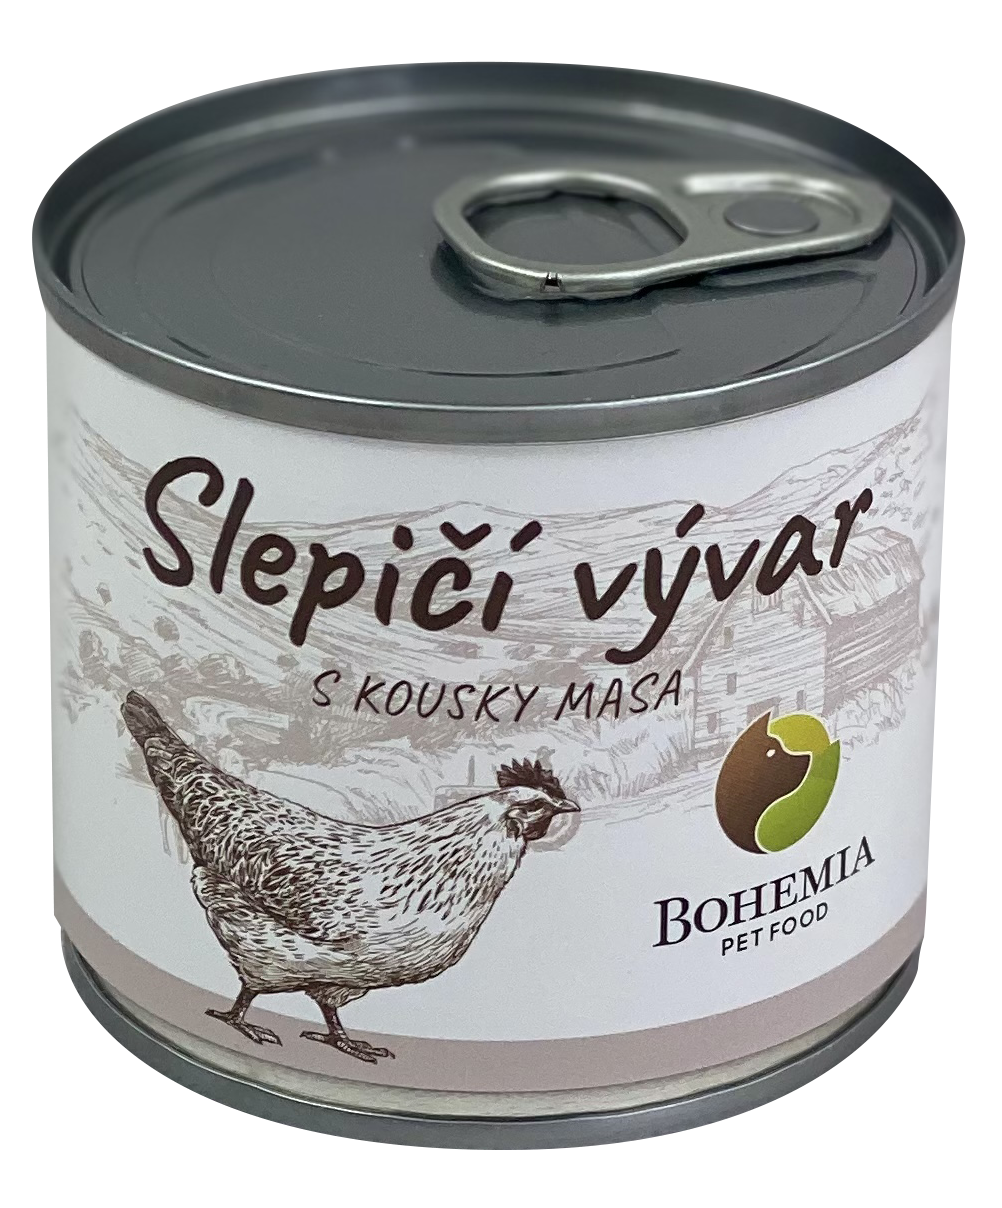 BOHEMIA Slepičí vývar s kousky masa 140ml Bohemia Pet Food